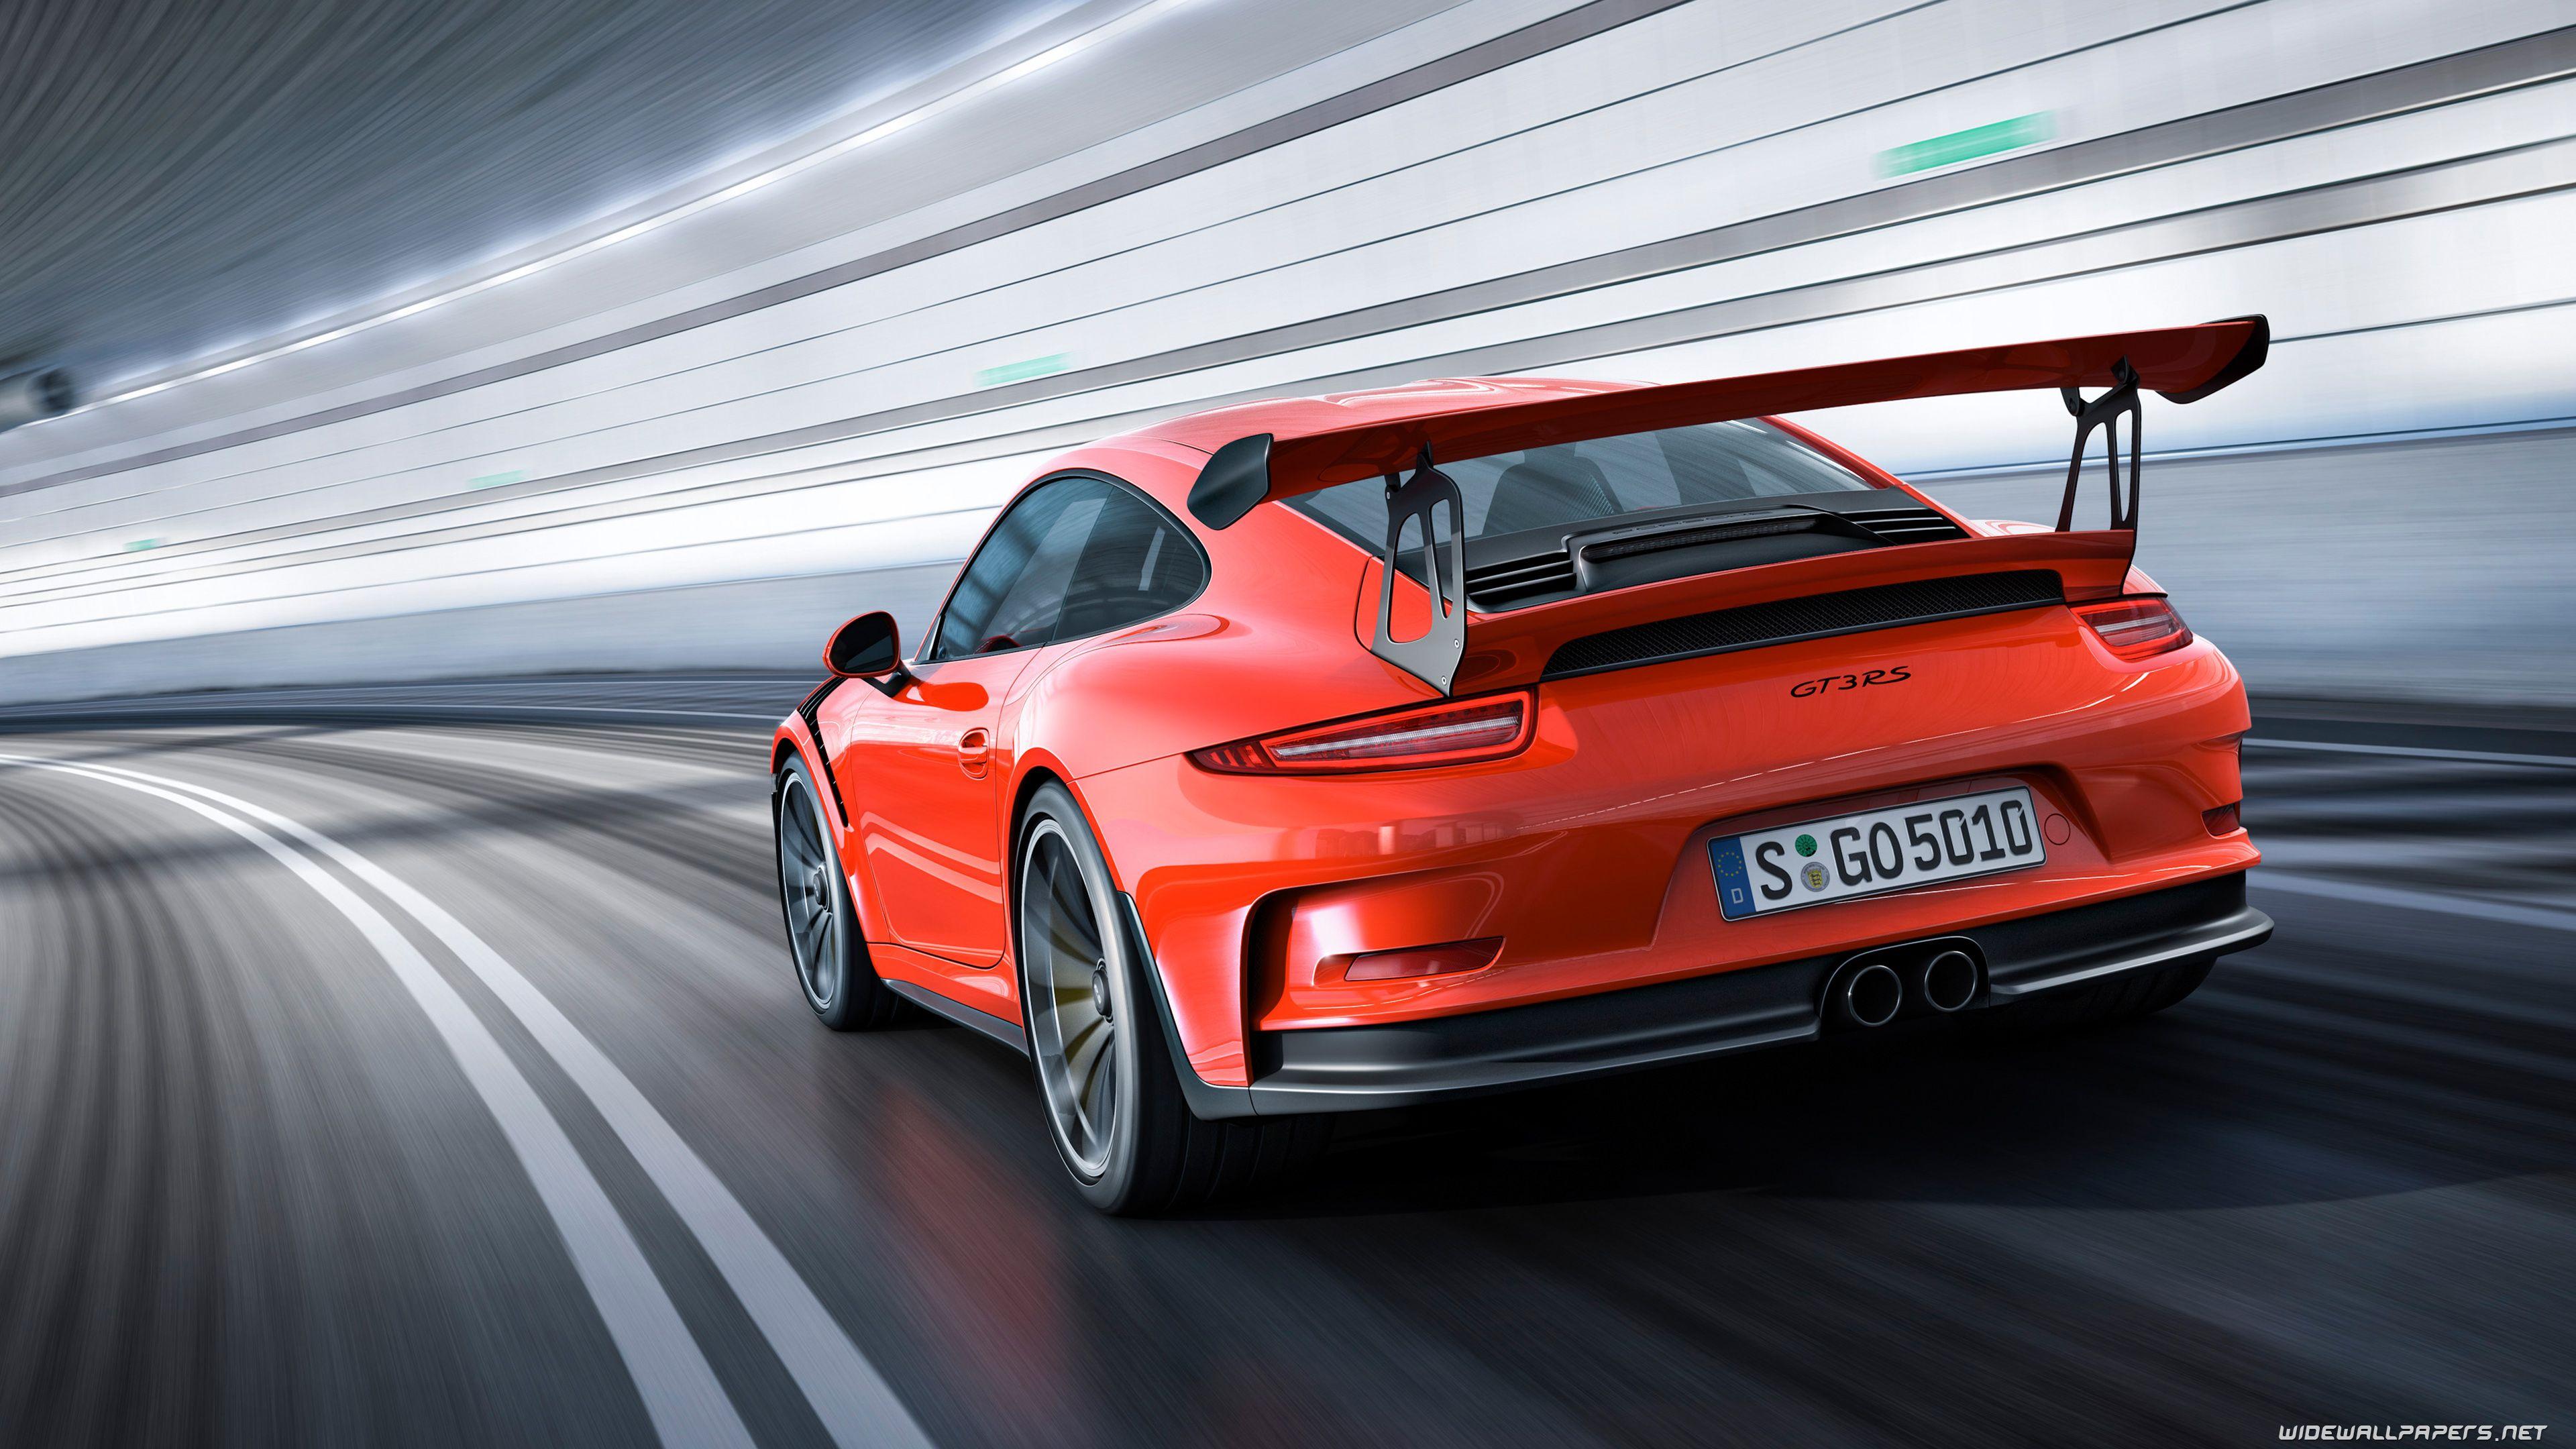 4K Ultra HD Porsche Wallpapers - Top Free 4K Ultra HD Porsche Backgrounds -  WallpaperAccess